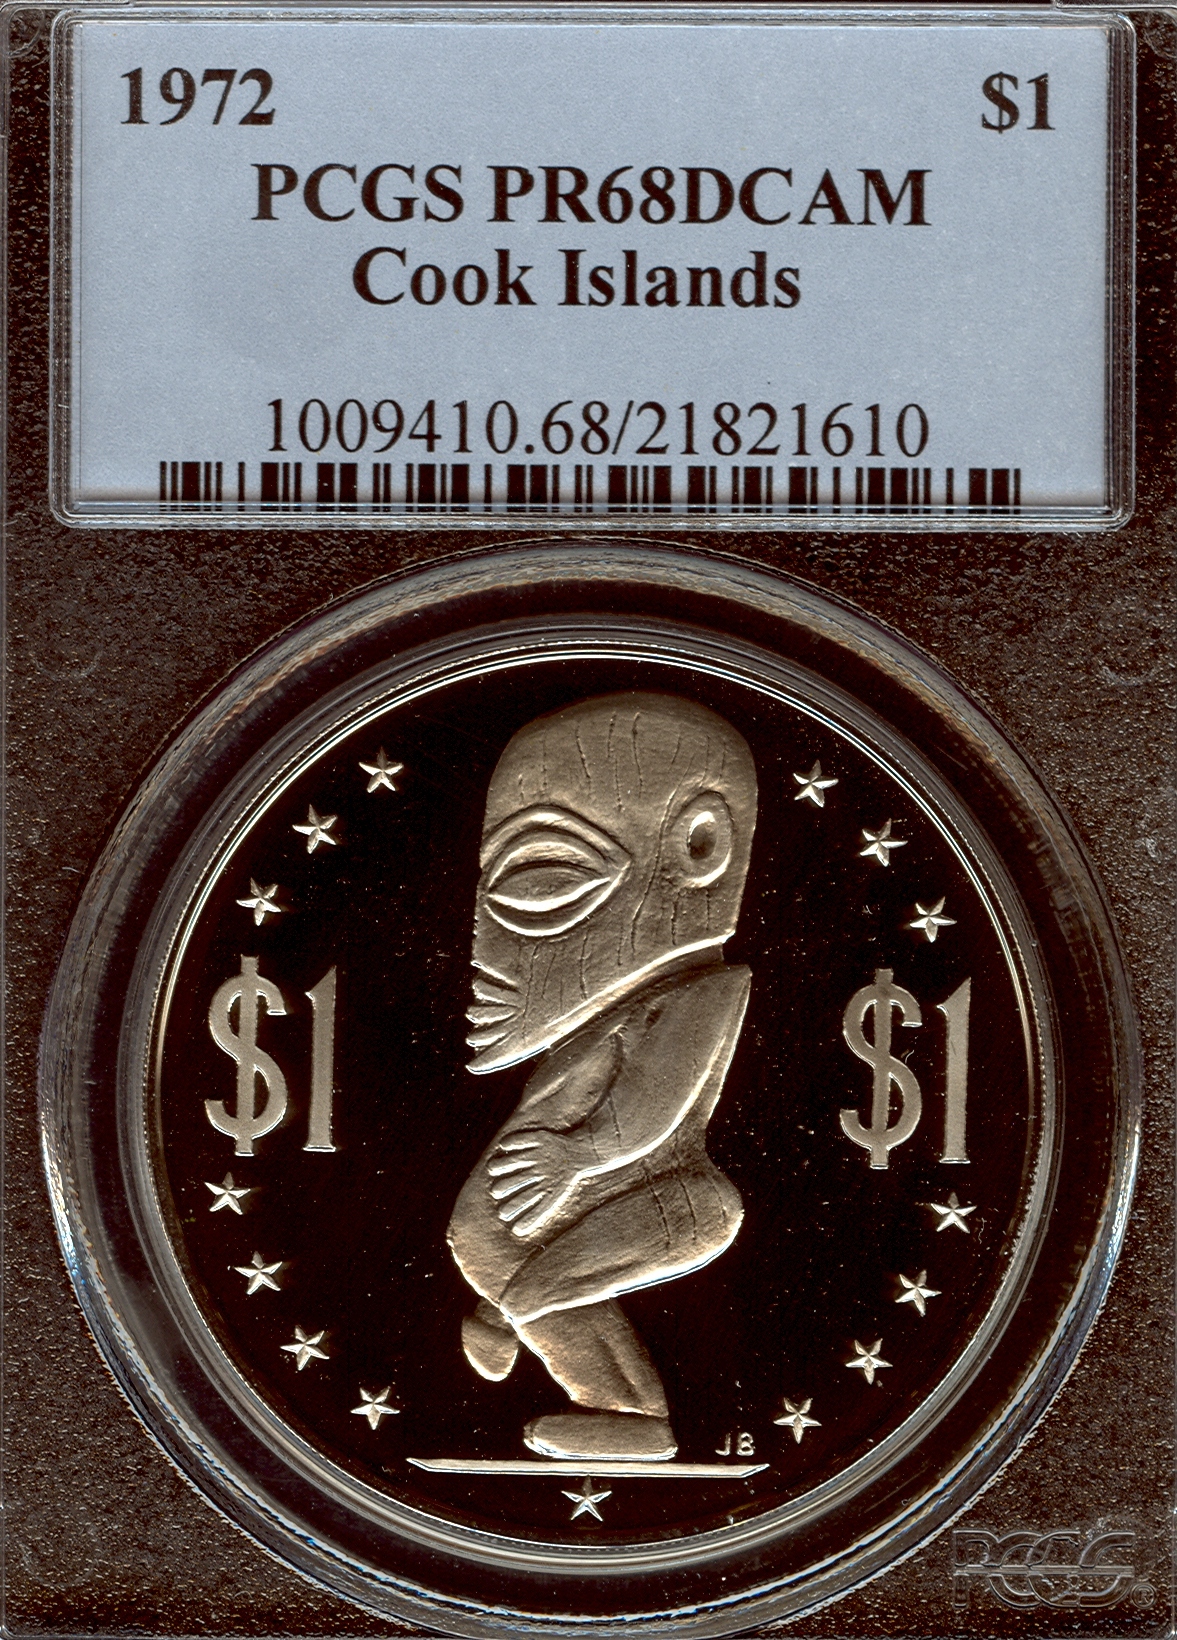 1972 21821610 Cook Islands PCGS PR68DCAM Slab Obv.jpg